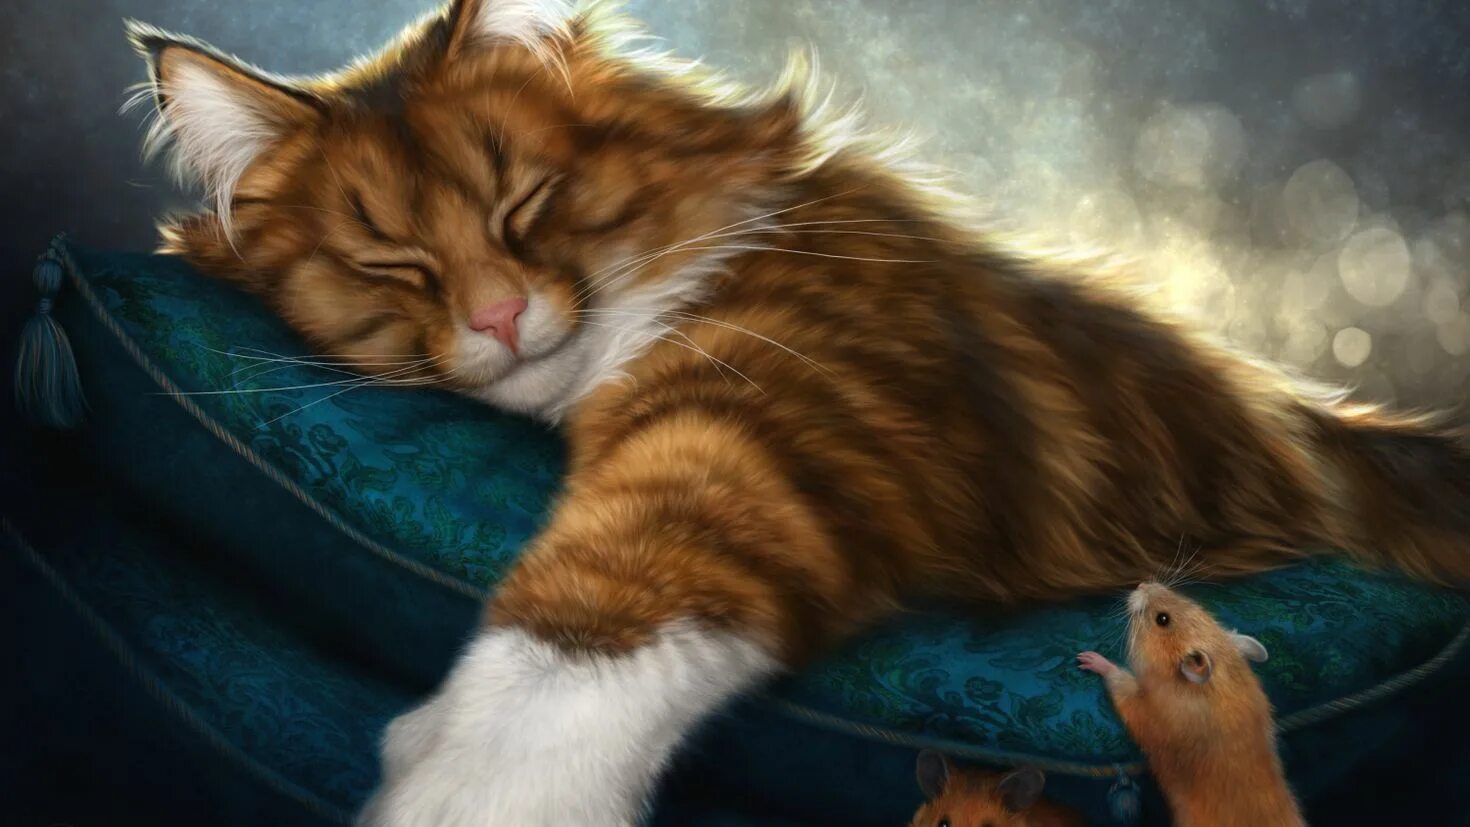 Картинки спокойной ночи с кошкой. Фэнтези кошки. Коты арты. Сказочная кошка. Спокойной ночи с кошками.